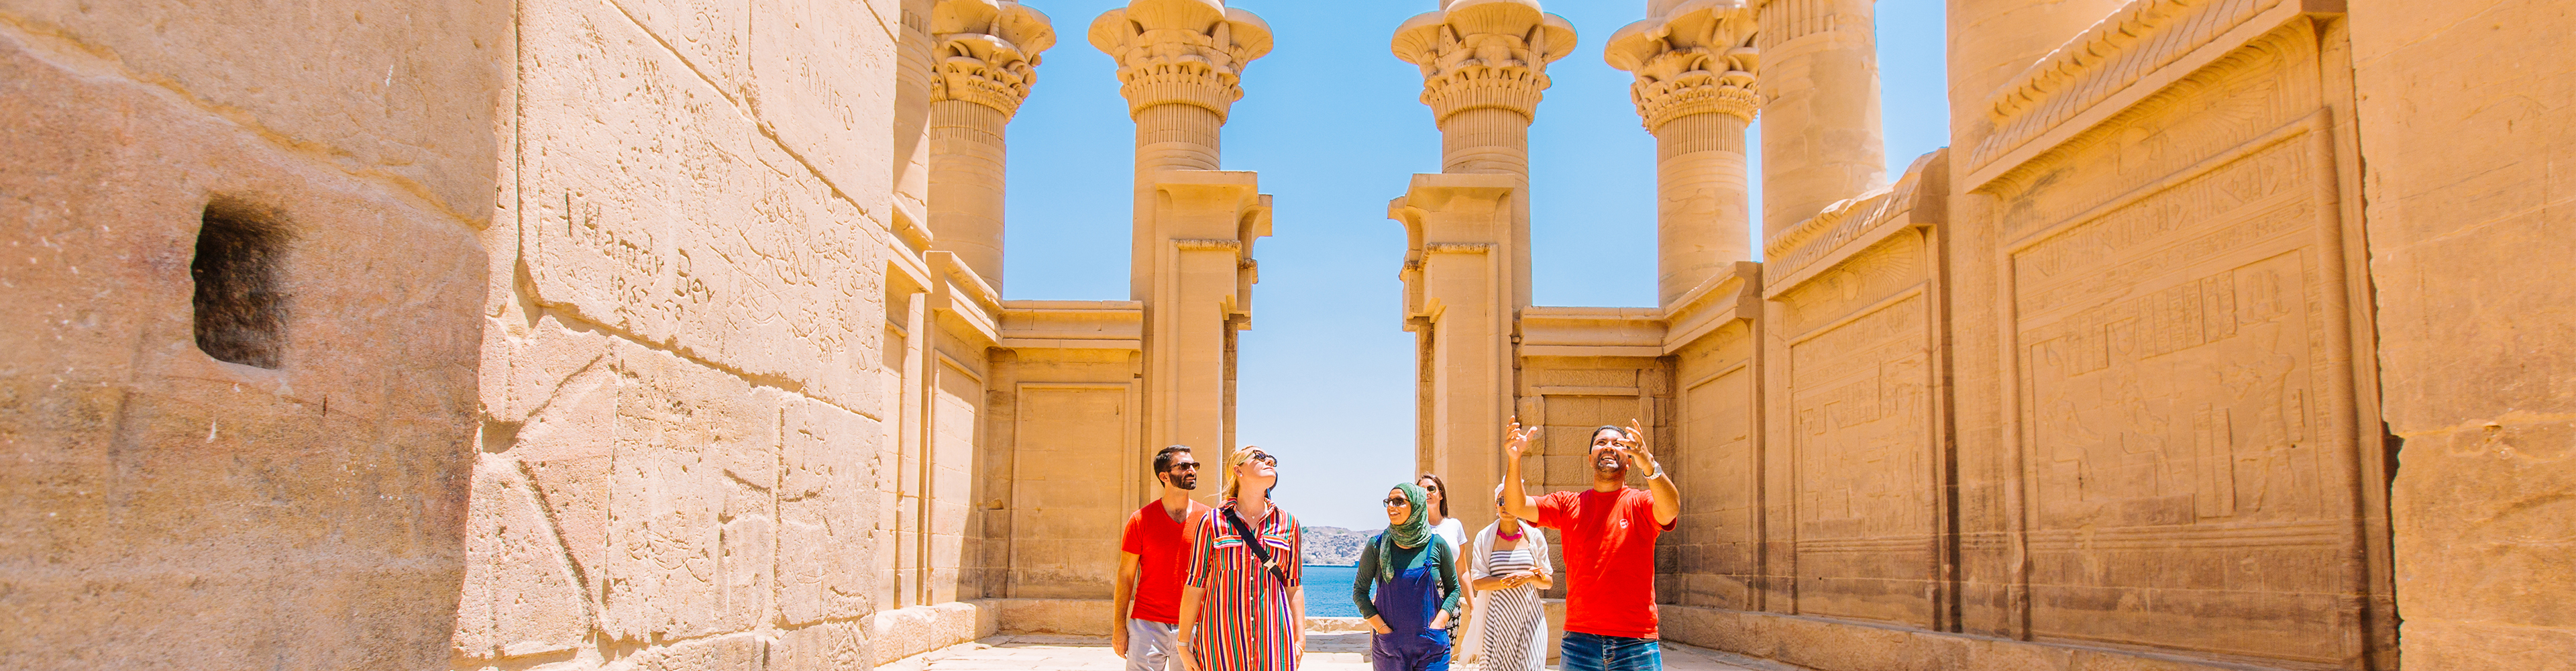 tourhub | Intrepid Travel | Egypt Experience | XEKI